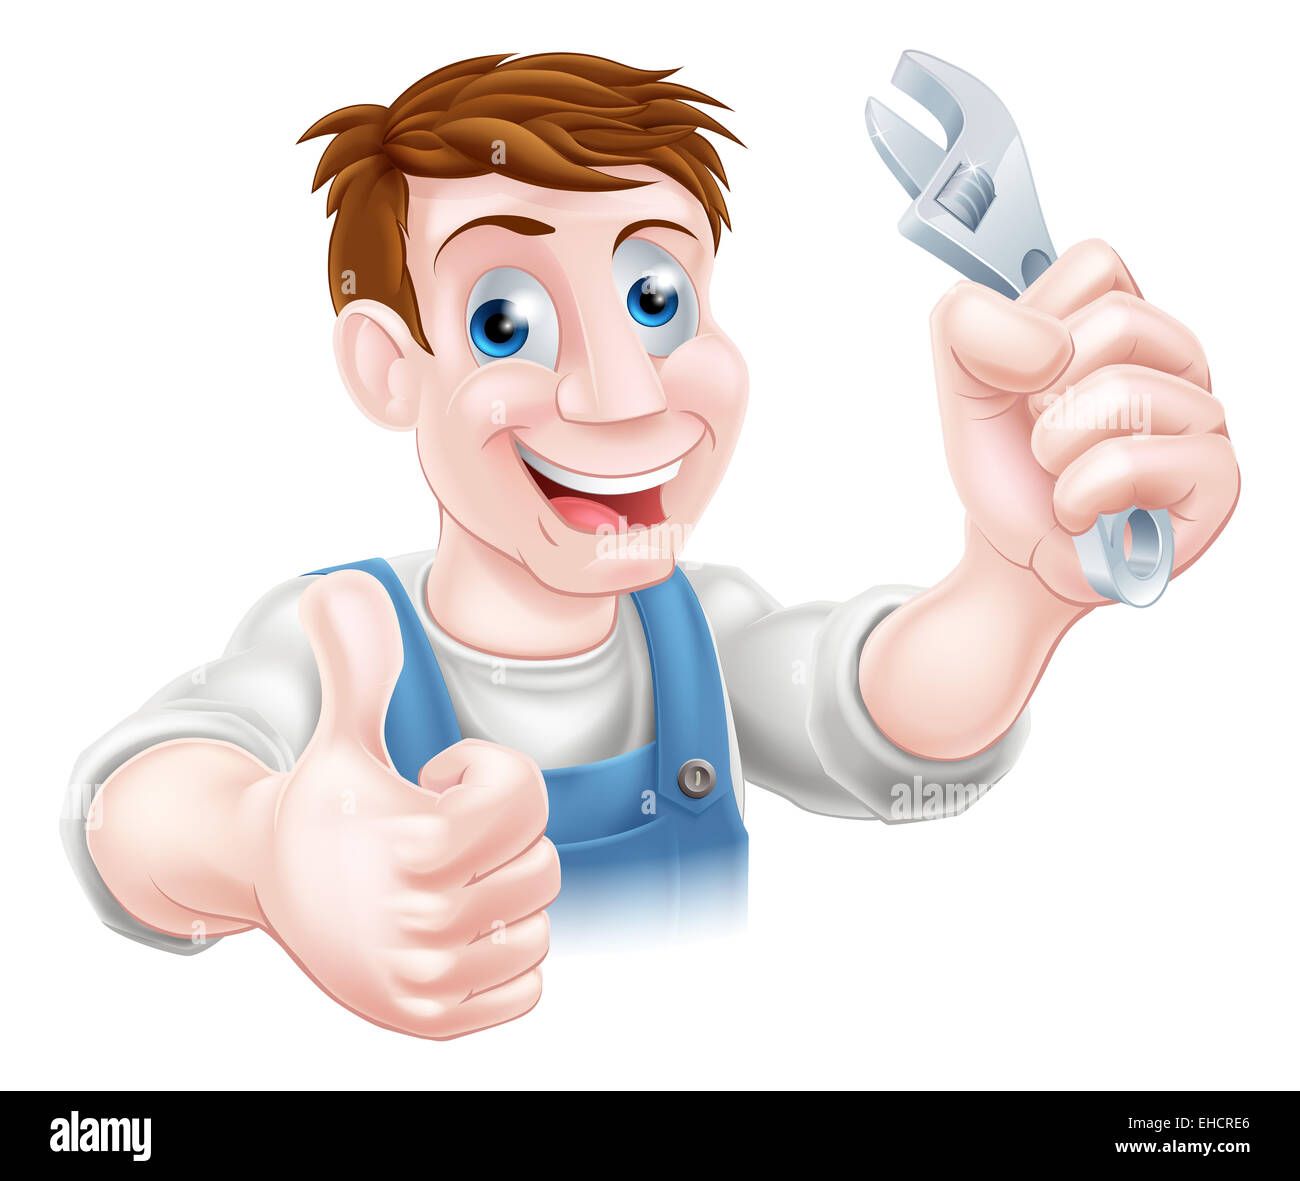 Un dessin de plombier ou mécanicien tenant une clé et de donner un coup de pouce Banque D'Images